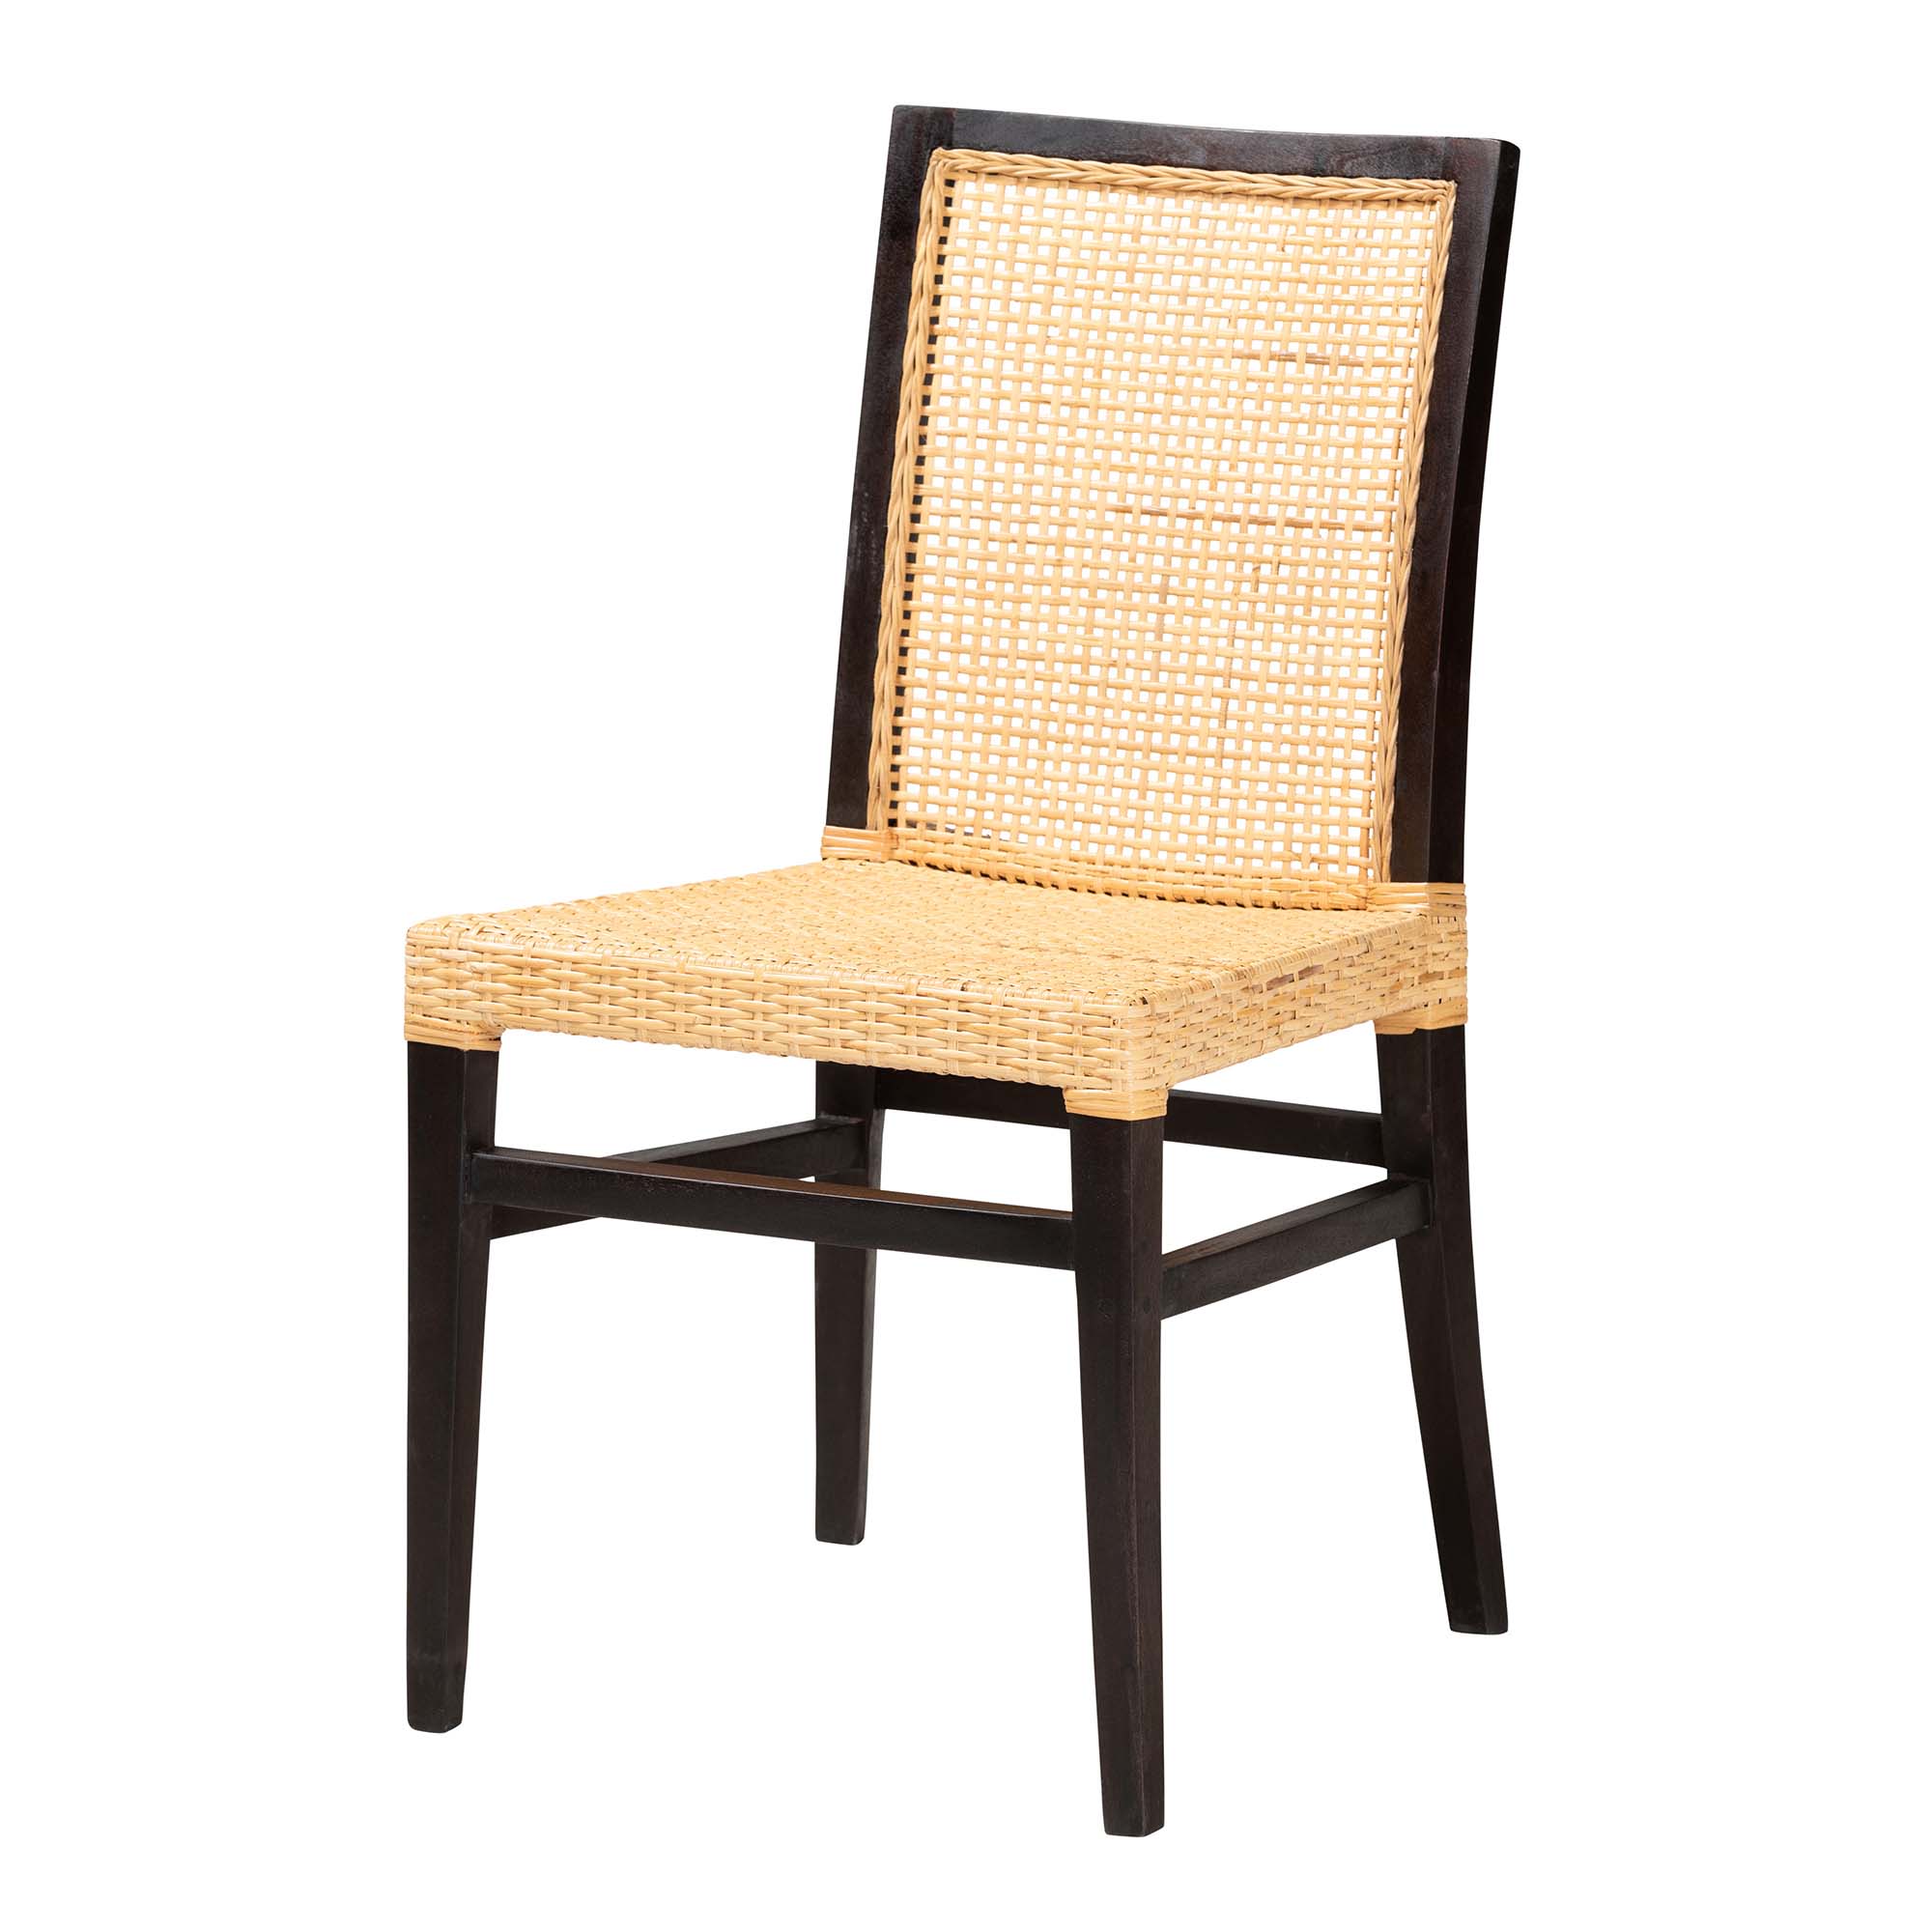 Baxton Studio Lingga Modern Bohemian Dark Brown Mahogany Wood and Natural Rattan Dining Chair